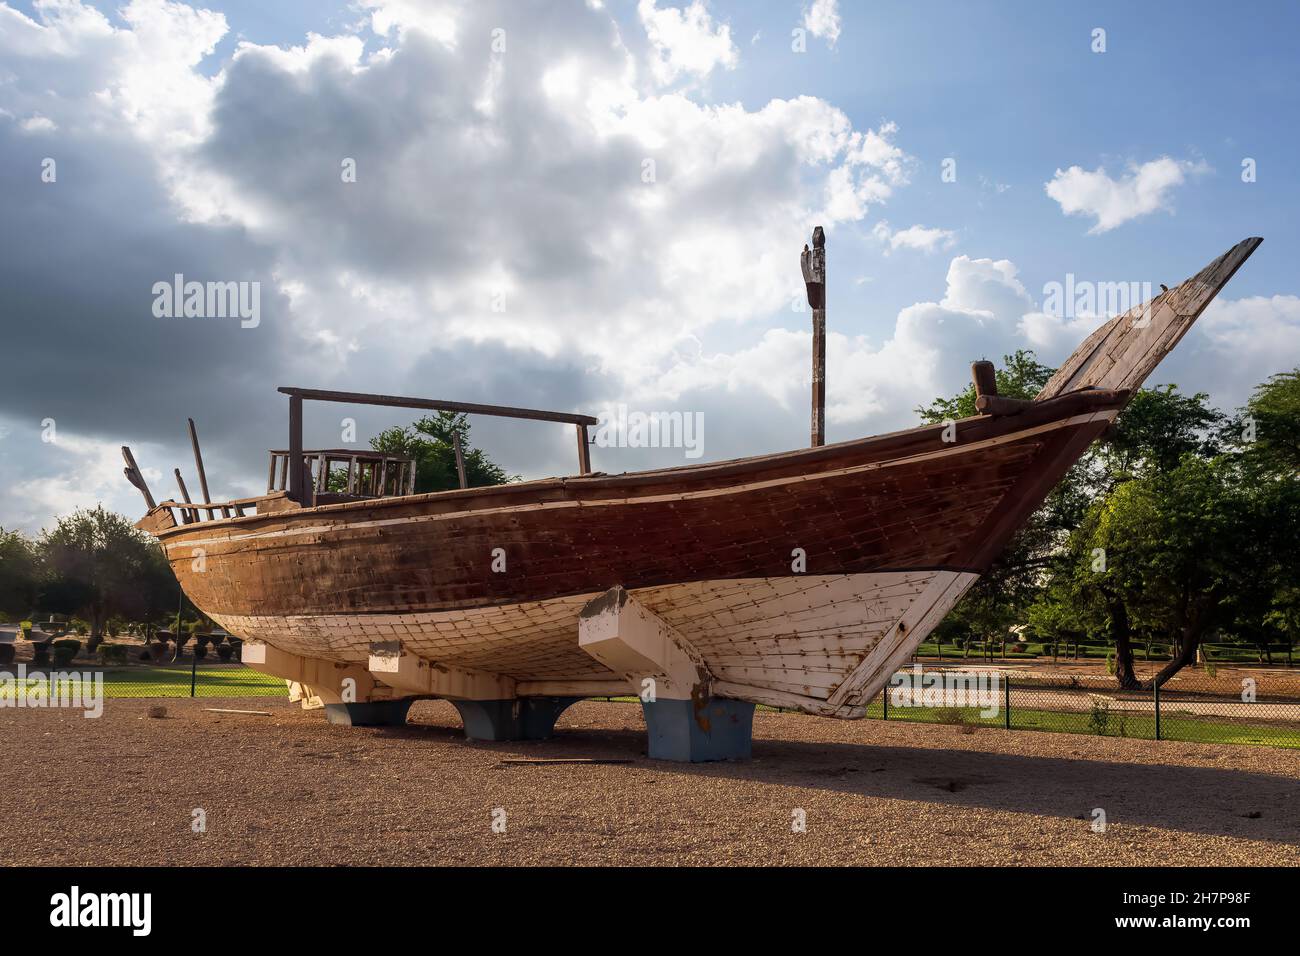 Un bateau traditionnel en bois à Aqua Park à Jubail Arabie Saoudite. Banque D'Images